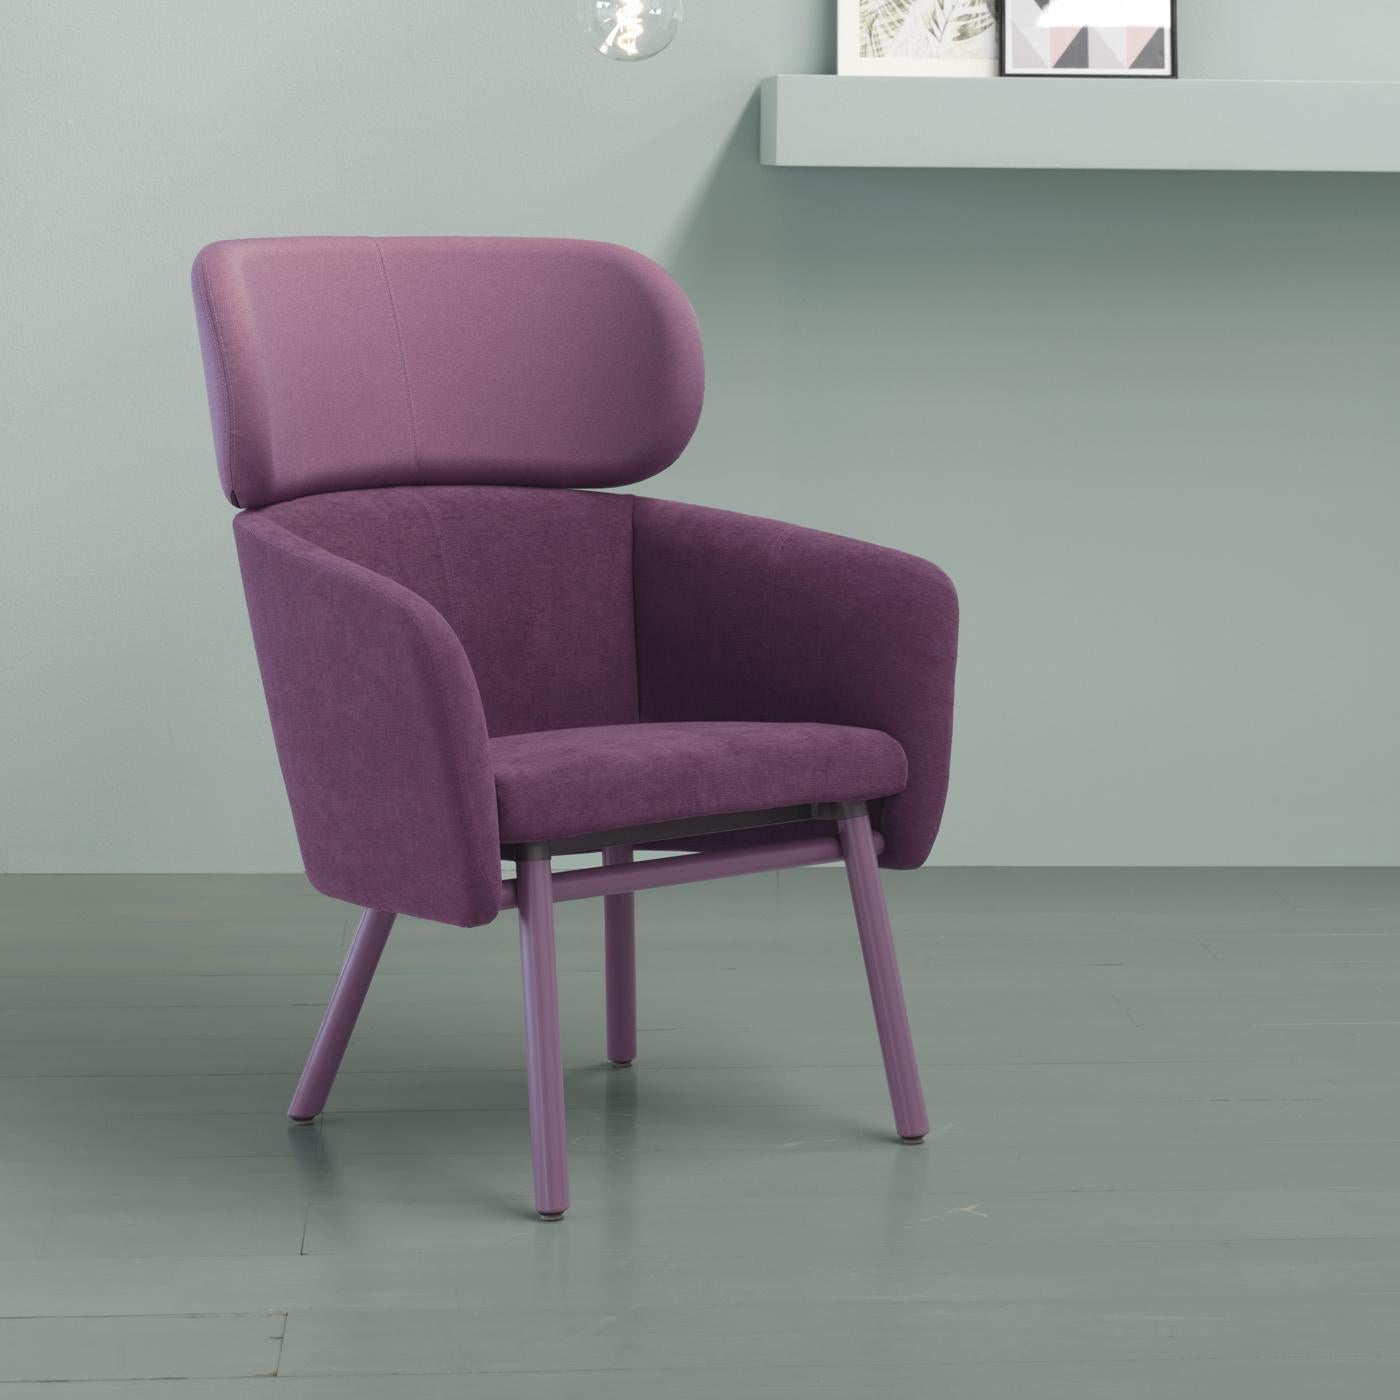 Eine großzügigere Version des raffinierten Stuhls Balù von Emilio Nanni, der sowohl im Esszimmer als auch im Wohnbereich für Raffinesse sorgt. Die elegante Struktur aus fliederfarben lackiertem Buchenholz mit leicht abgeschrägten Beinen und die